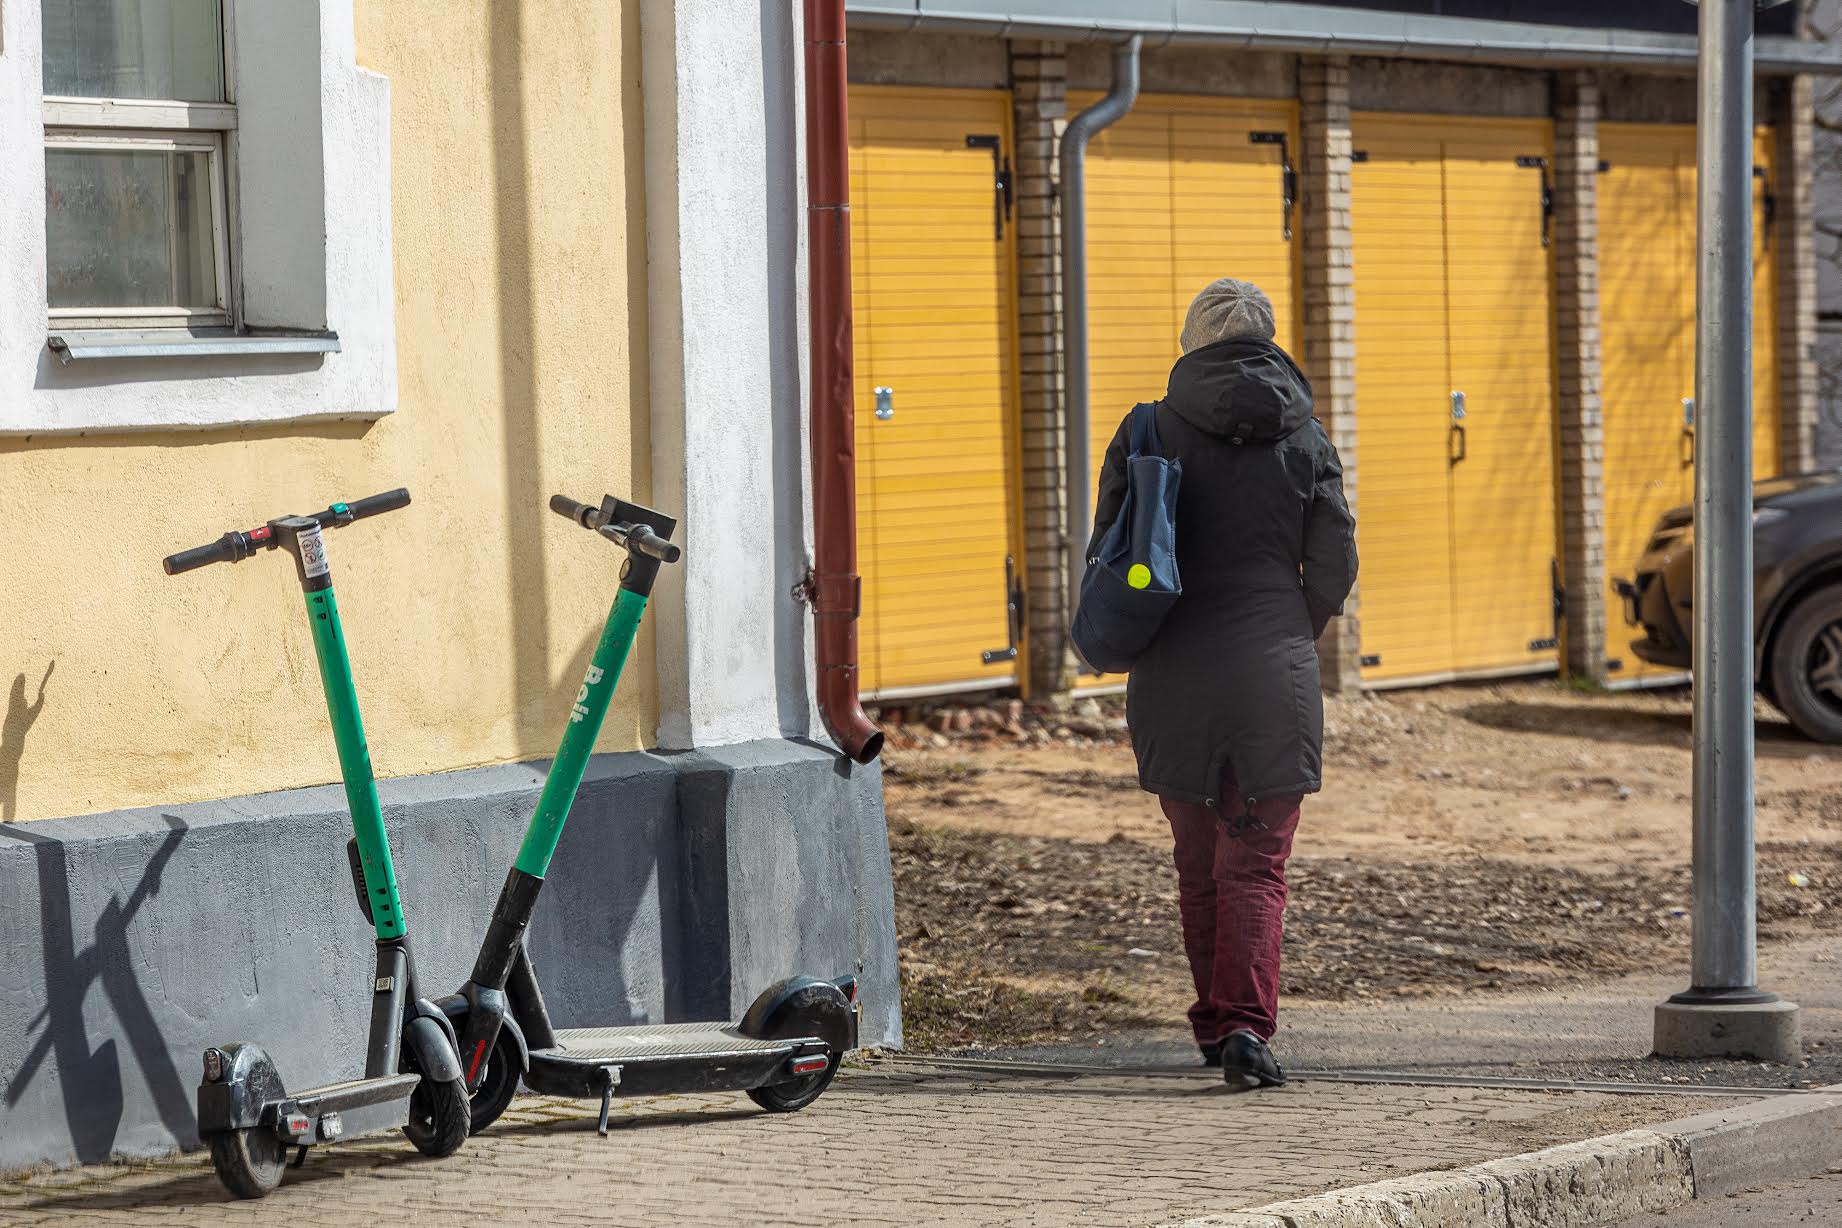 Bolti tõukeratastel kindlad parkimistaskud linnas puuduvad. Ratast saab kasutamiseks võtta ning pärast kasutamist jätta piiranguteta erinevatesse paikadesse. Foto: AIGAR NAGEL